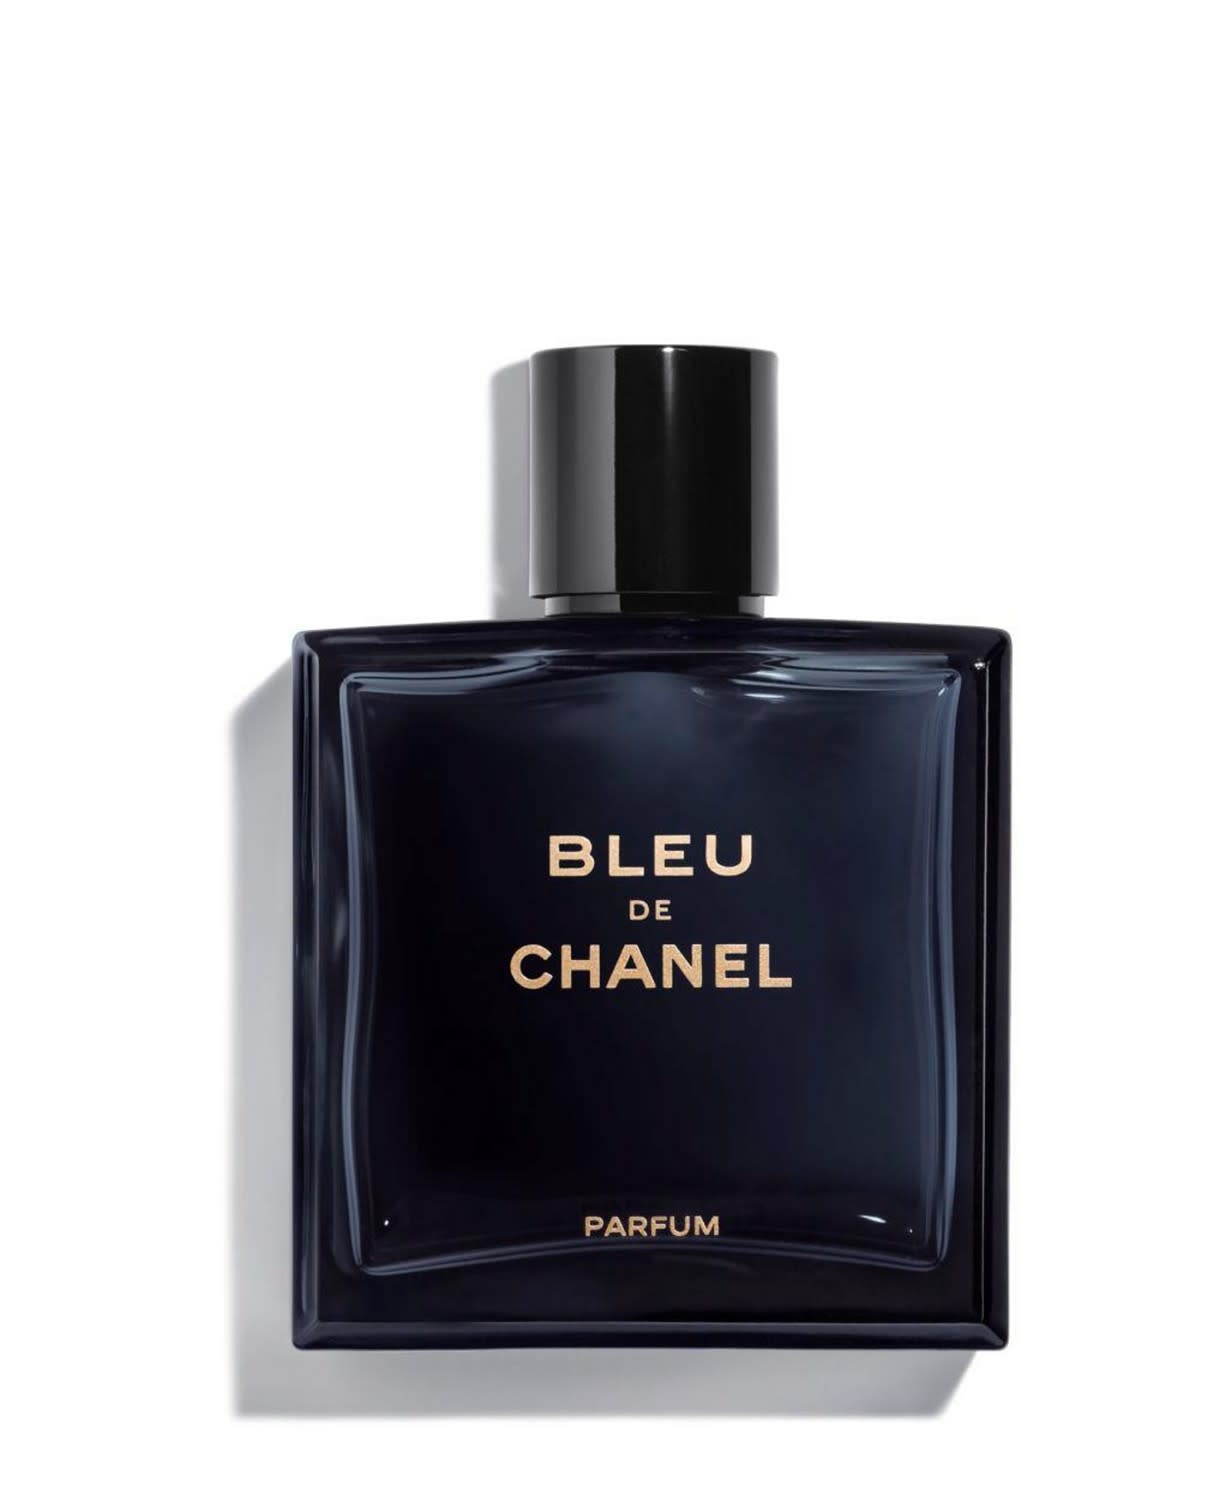 Chanel for Men - Bleu De Chanel PARFUM - The Scent Masters